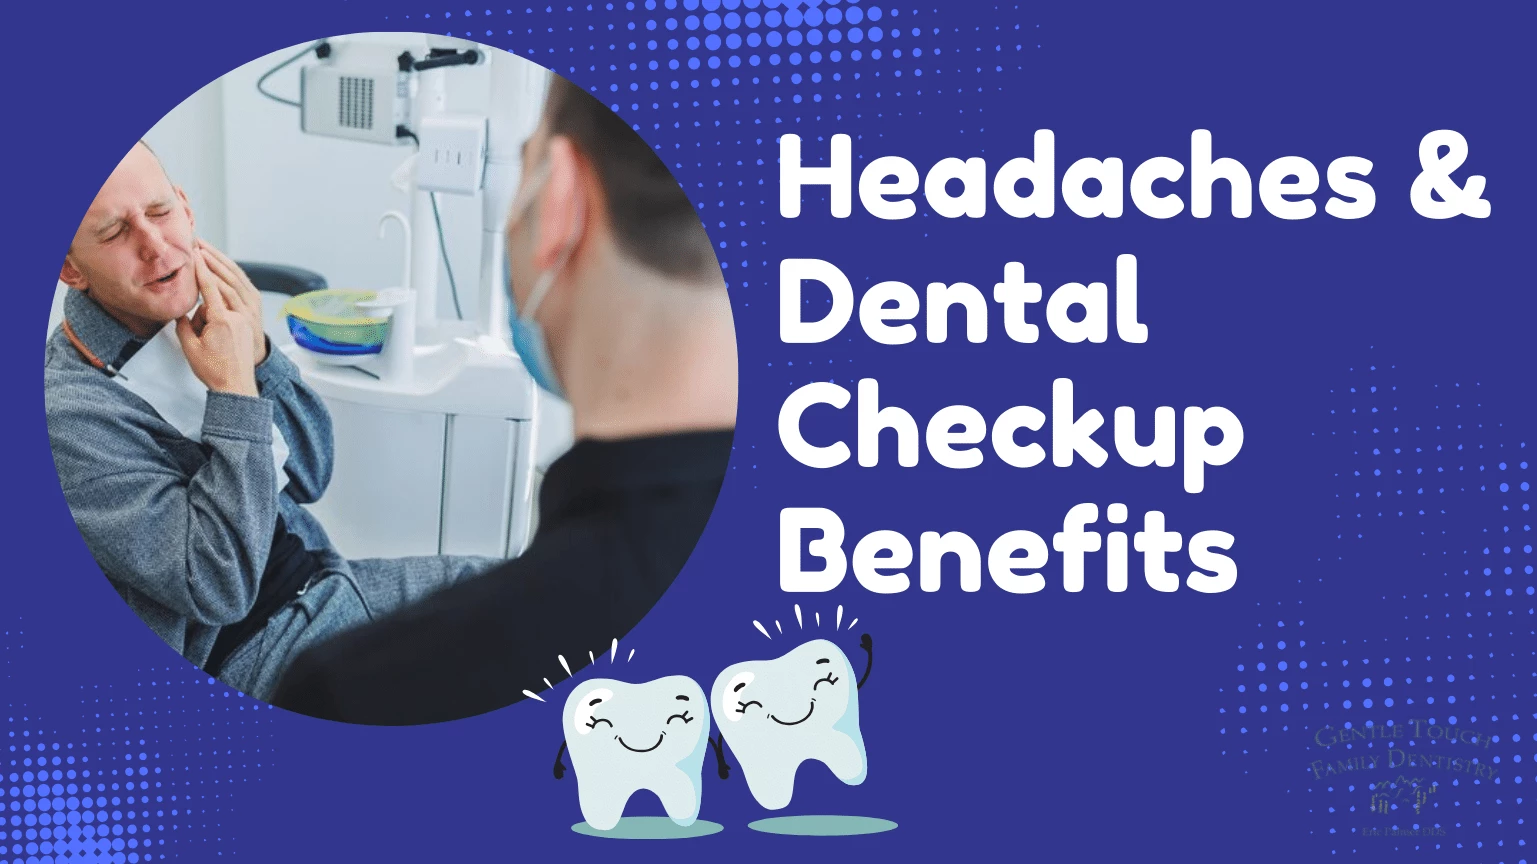 Headaches & Dental Checkup Benefits